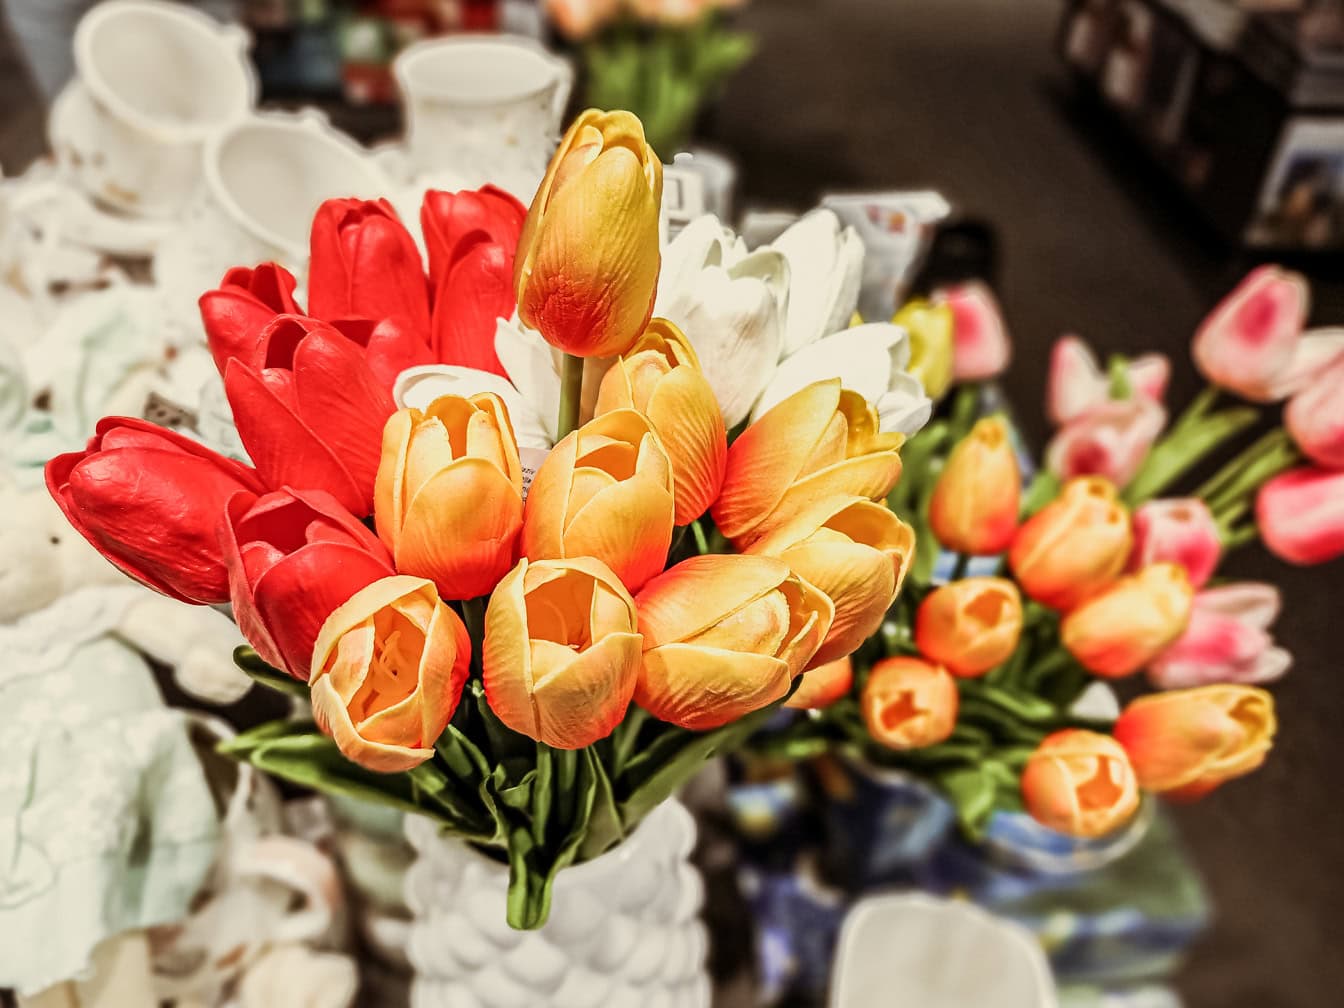 Csokor műanyag narancssárga-sárga tulipánvirág a boltban többek között